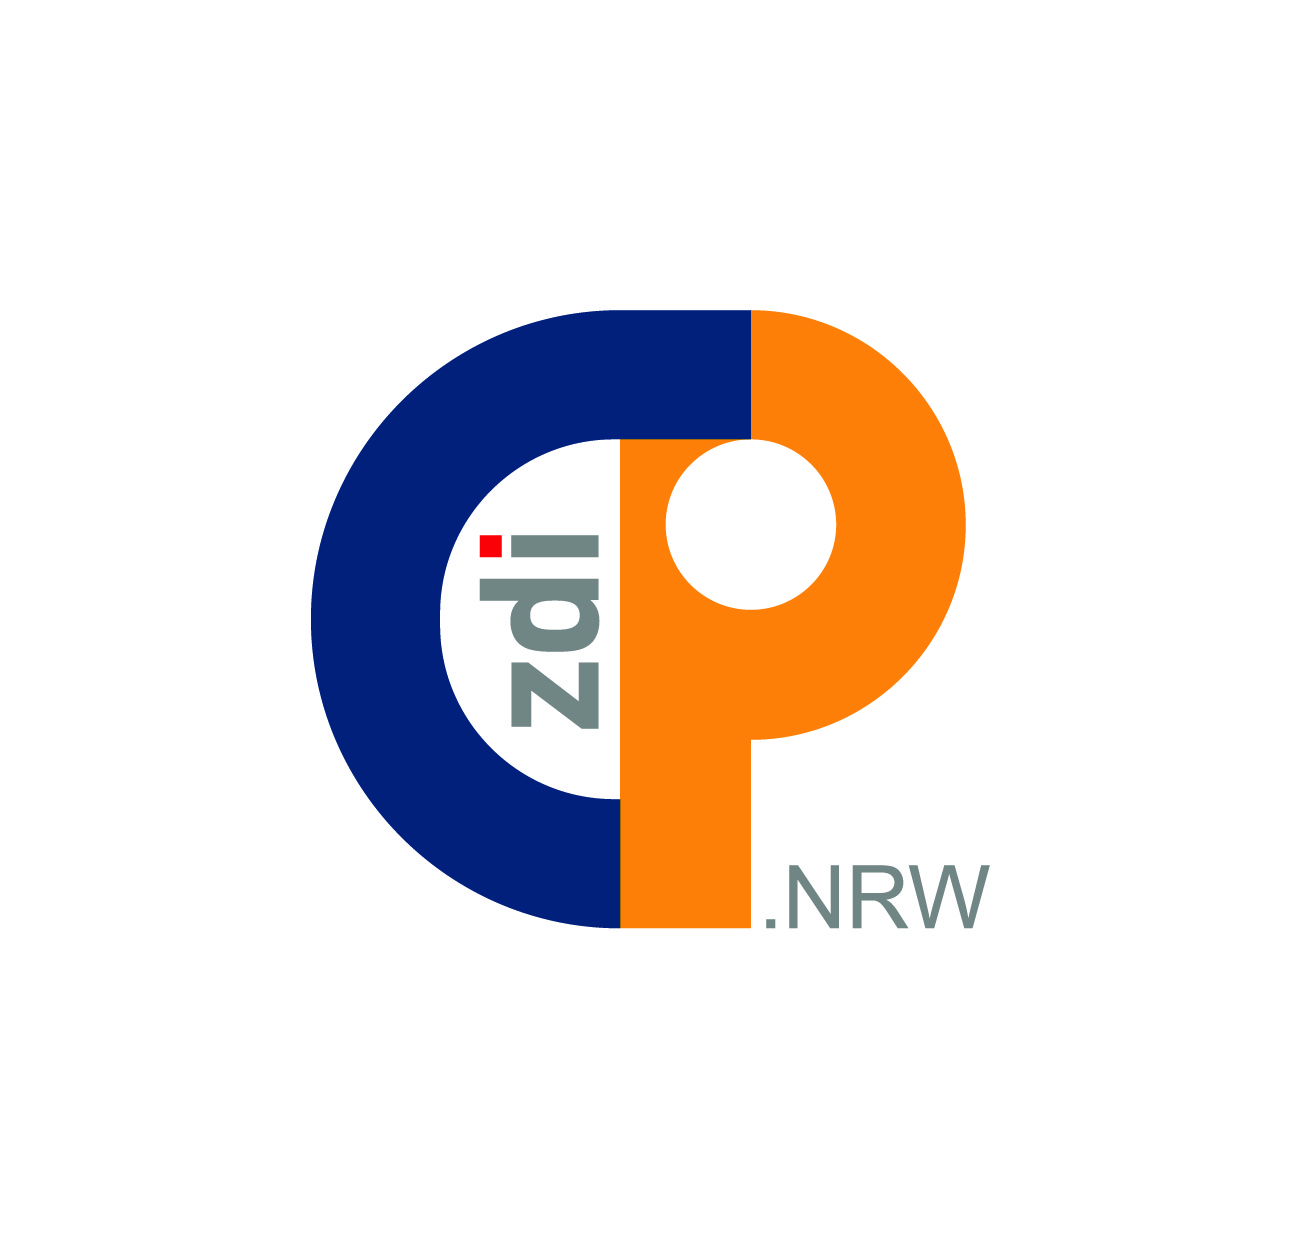 На малюнку показано новий логотип платформи спільноти zdi. Він має темно-синю букву C, яка переходить у помаранчеву букву P. У білому просторі між C і P, zdi сірий, крапка на i червона. NRW написано маленькими сірими літерами внизу поруч із P.